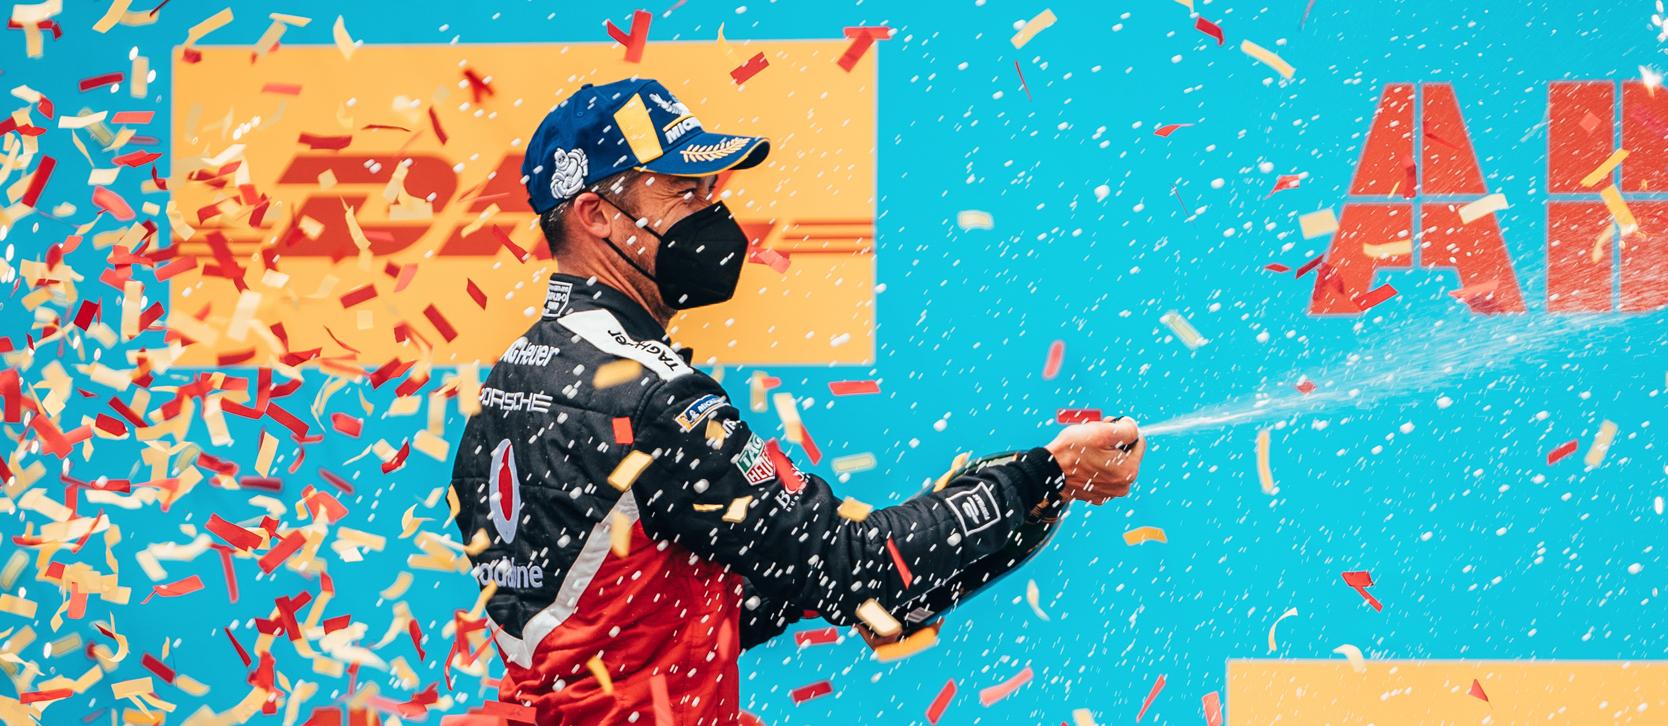 Německý pilot André Lotterer z týmu TAG Heuer Porsche slaví své vítězství ve Valencii. V pořadí šestém závodě ročníku 2020/21 vybojoval své první body.